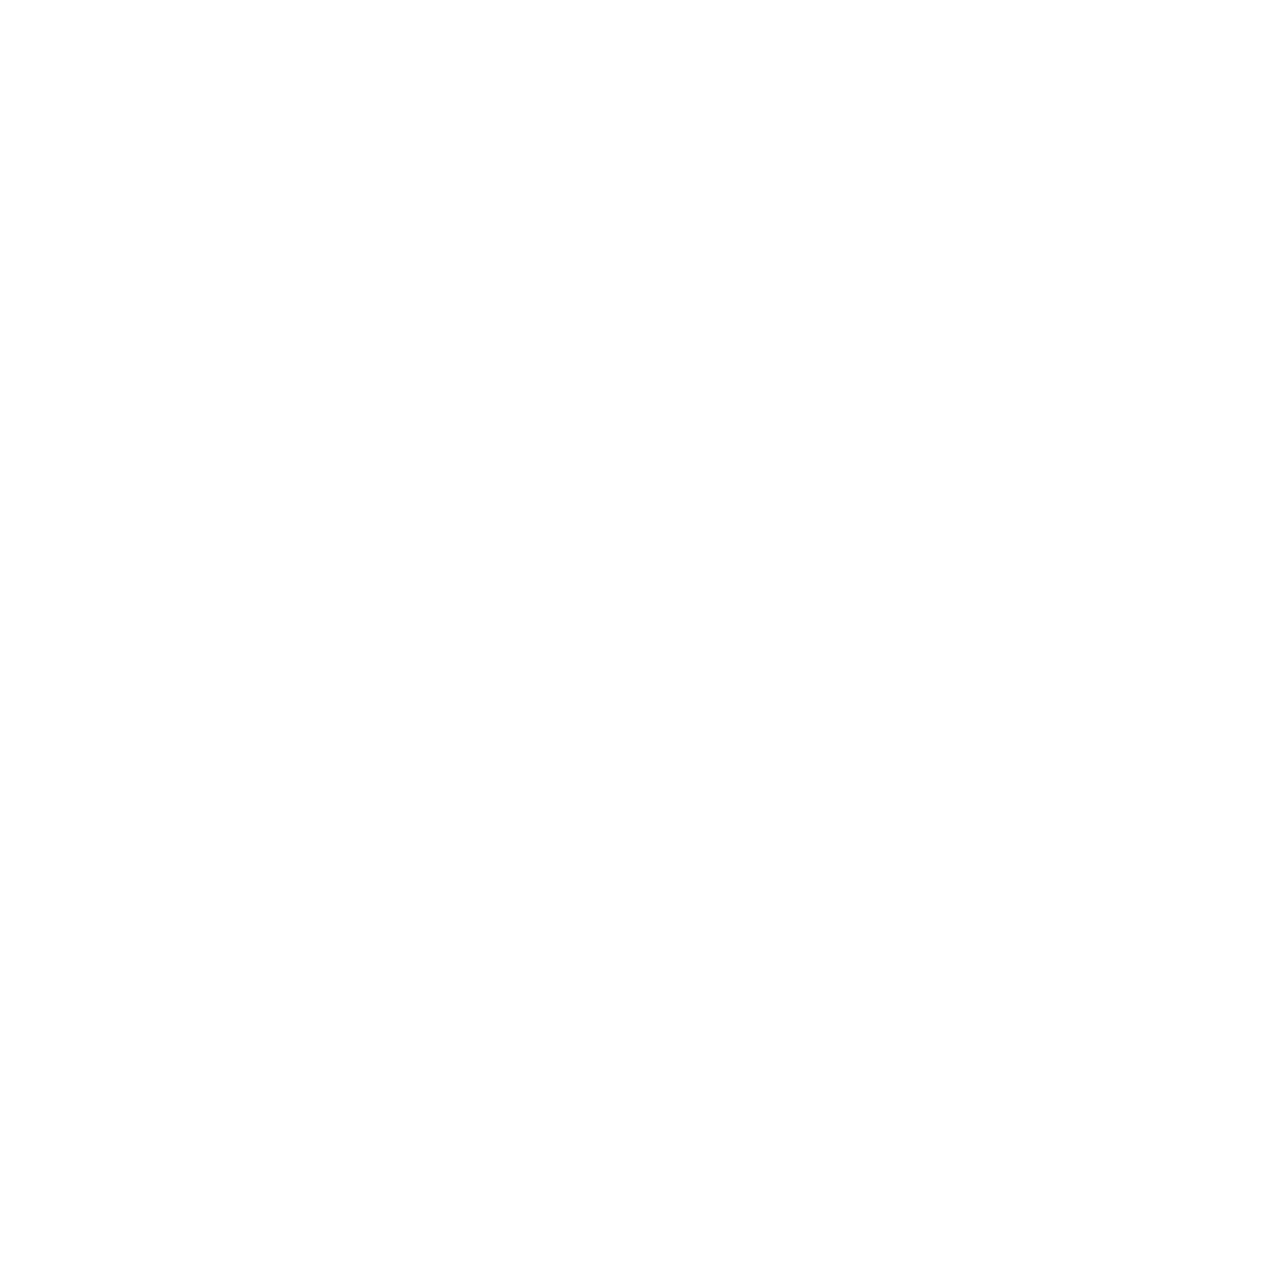 Gamatec